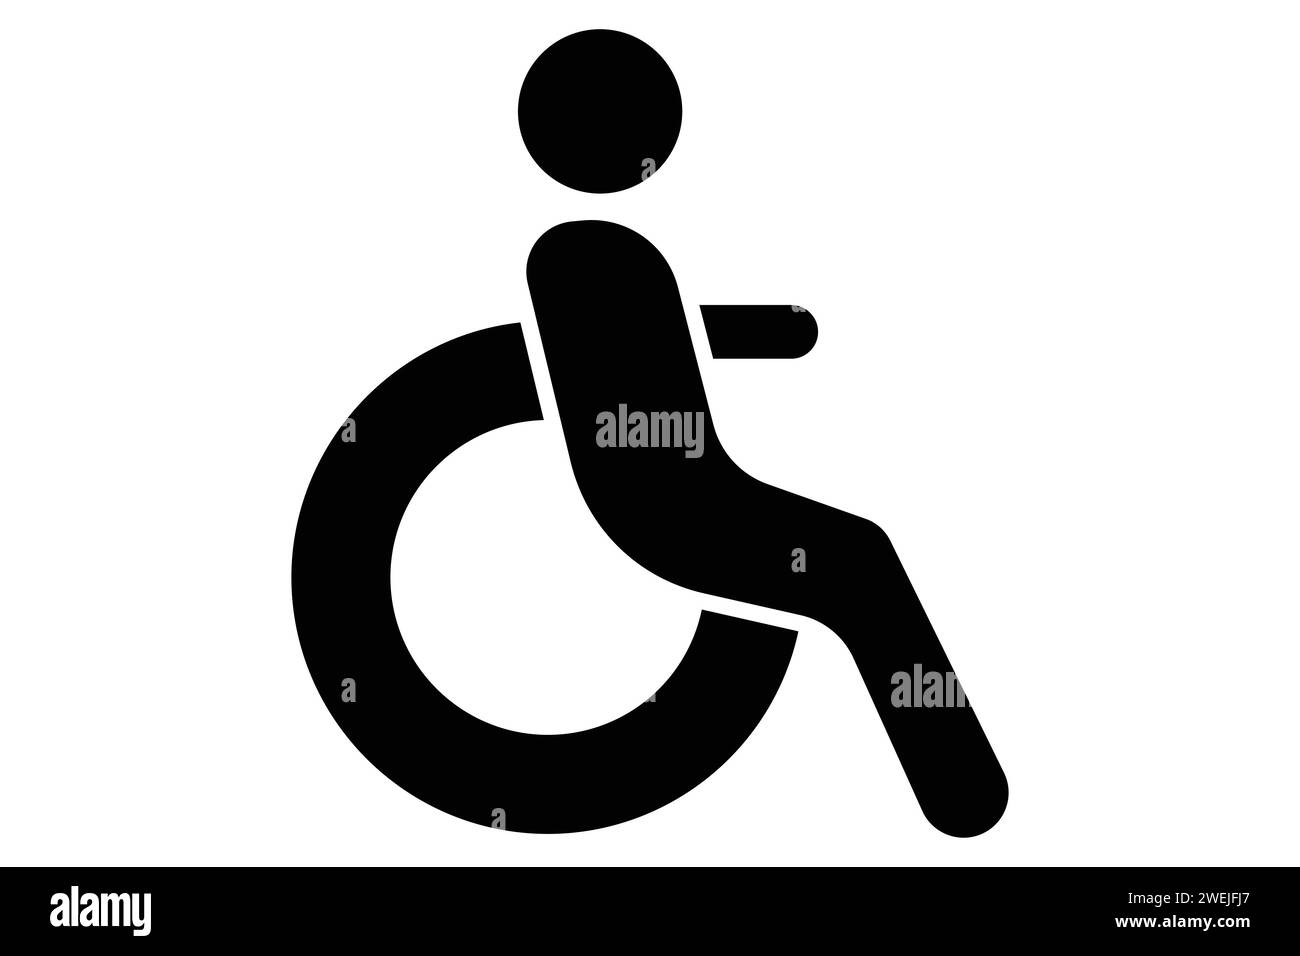 Rollstuhl für Behinderte Icon. Symbol für zugängliche Routen. Symbolstil durchgehend. Elementabbildung Stock Vektor